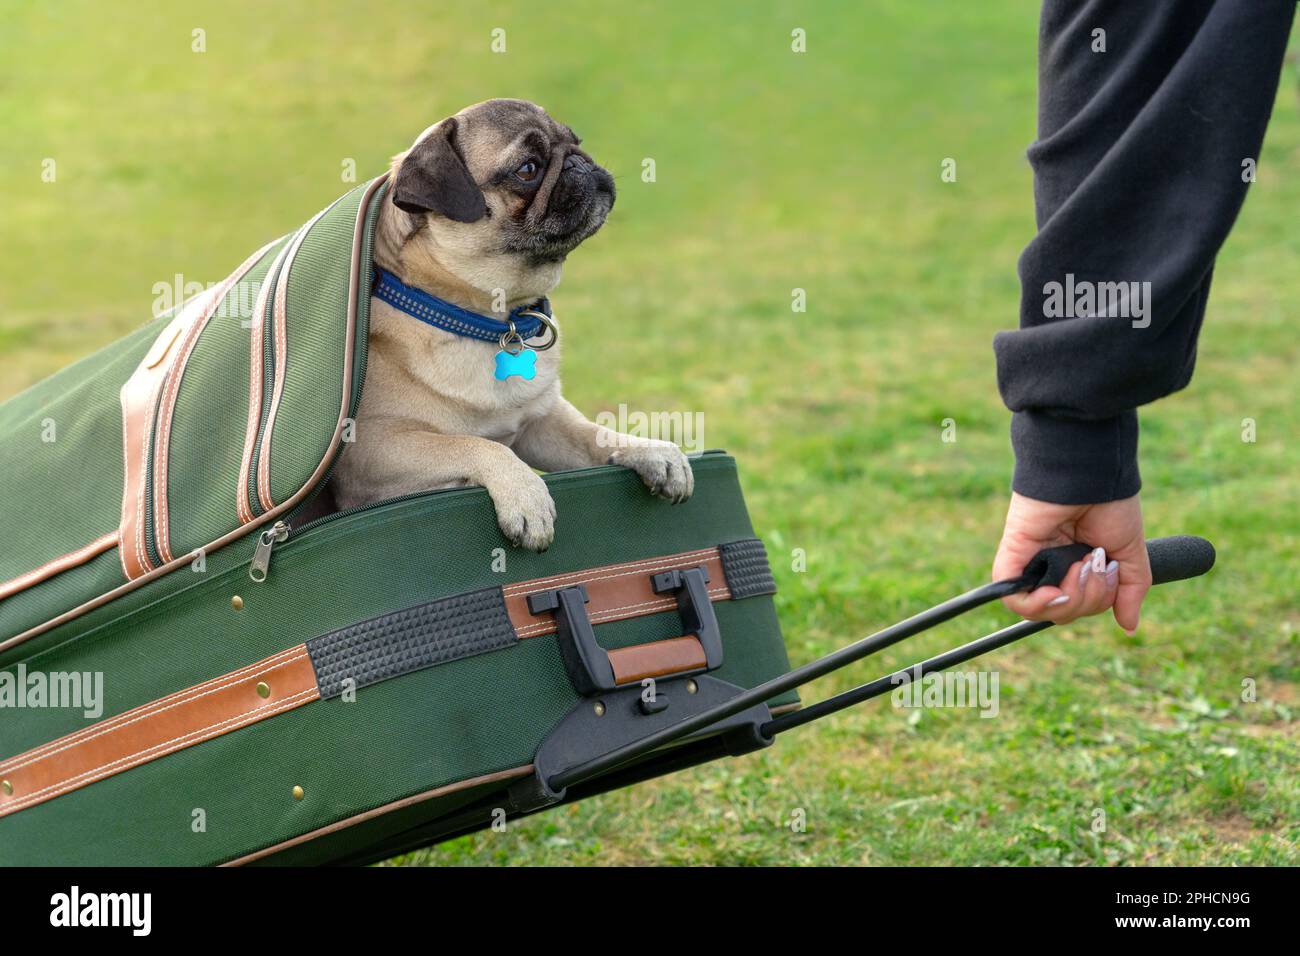 Süße lustige Mopps poppen Hundewelpen in einem Koffer und warten auf die nächste Reise. Stockfoto